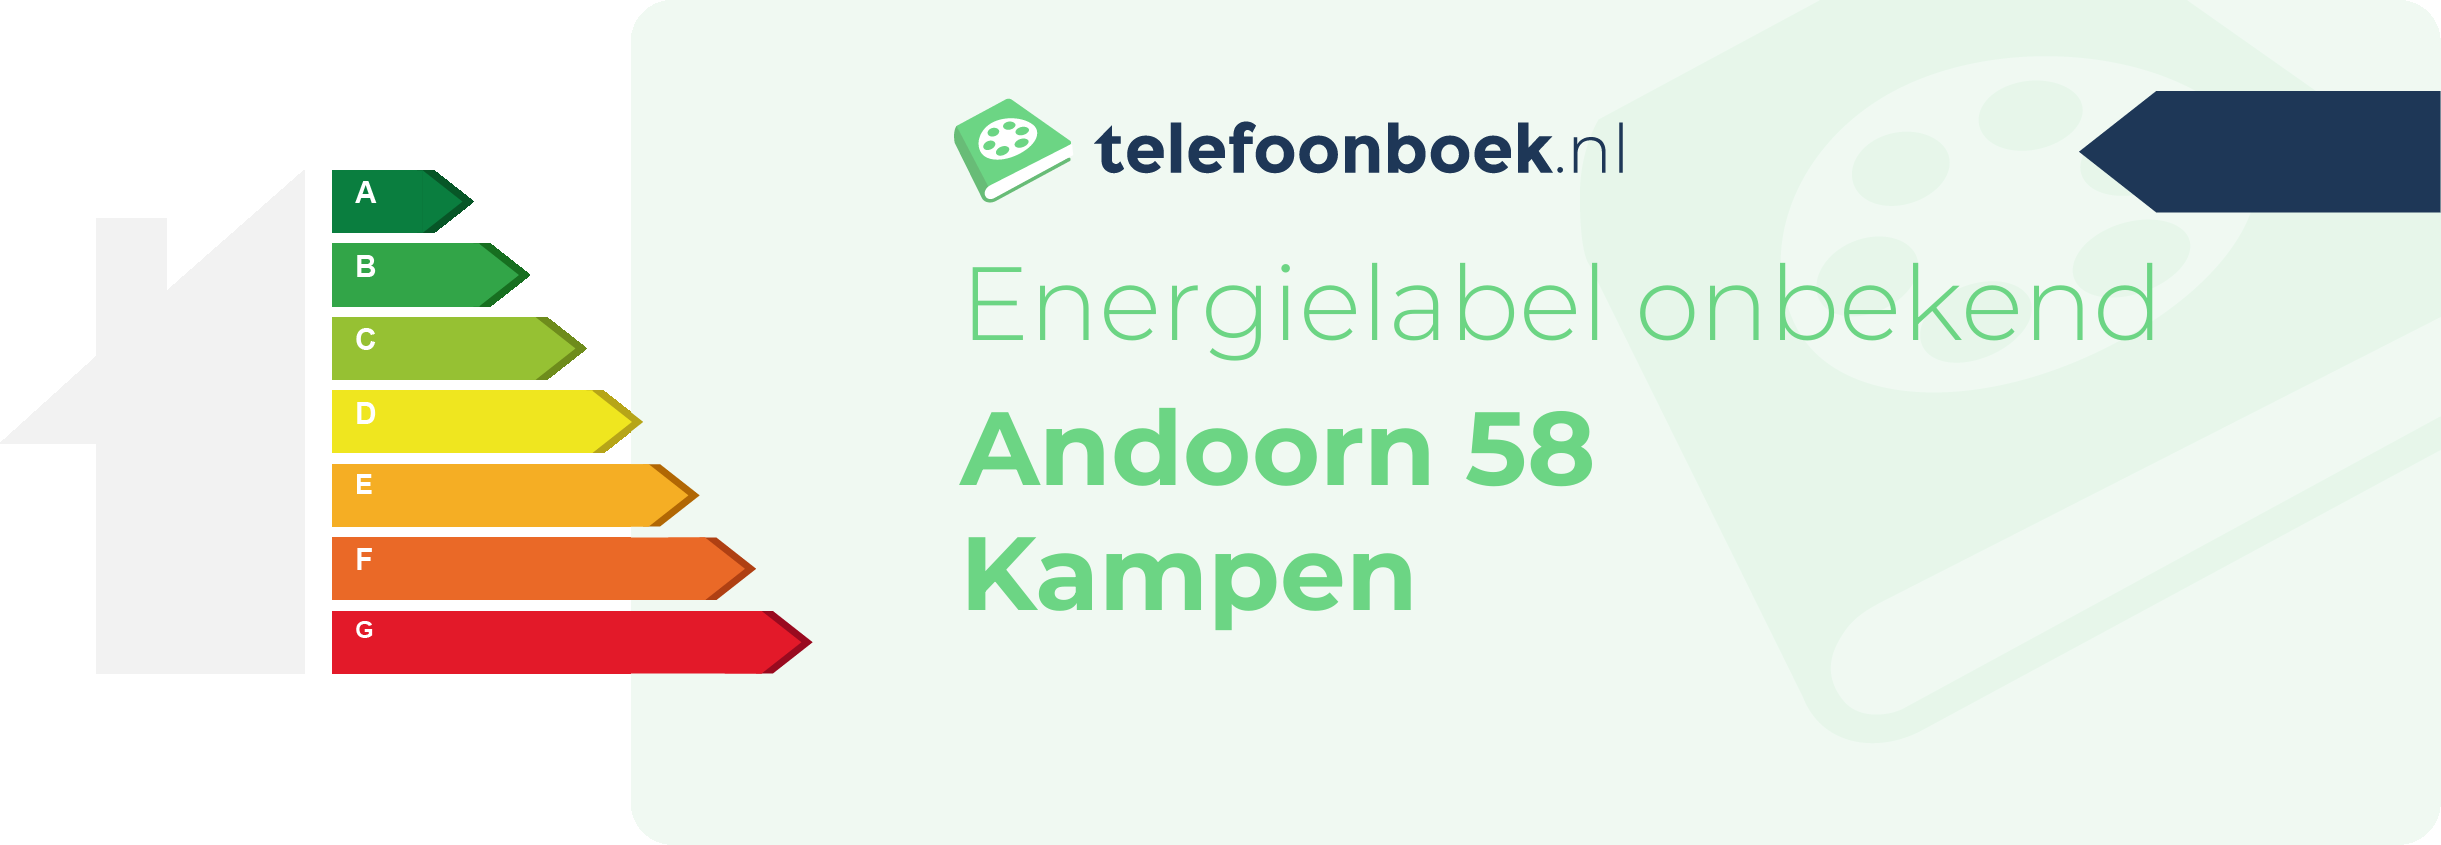 Energielabel Andoorn 58 Kampen